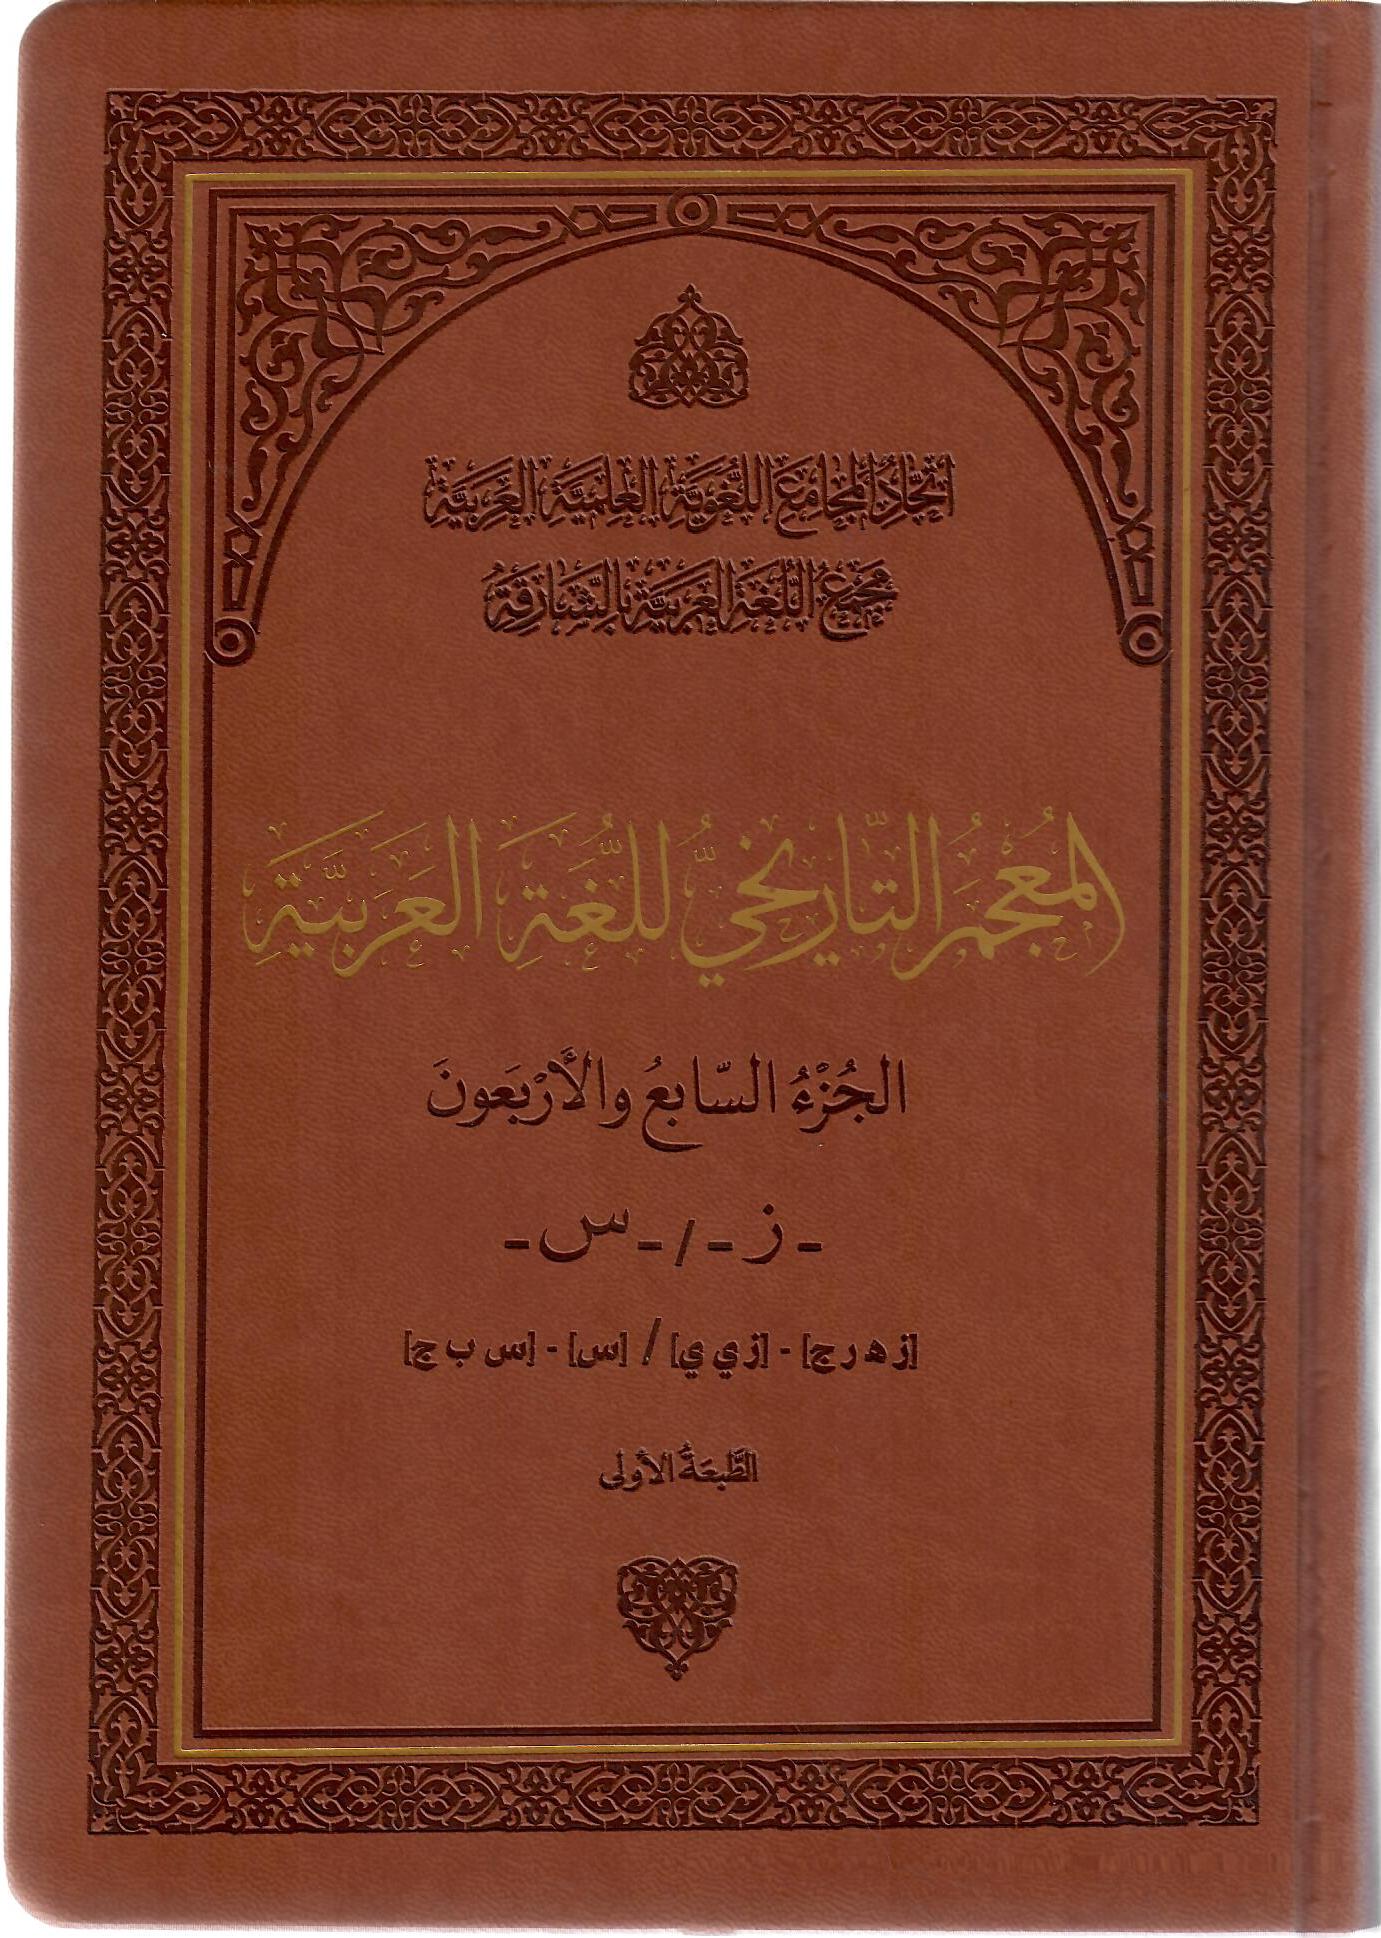 المعجم التاريخي للغة العربية الجزء السابع والأربعون